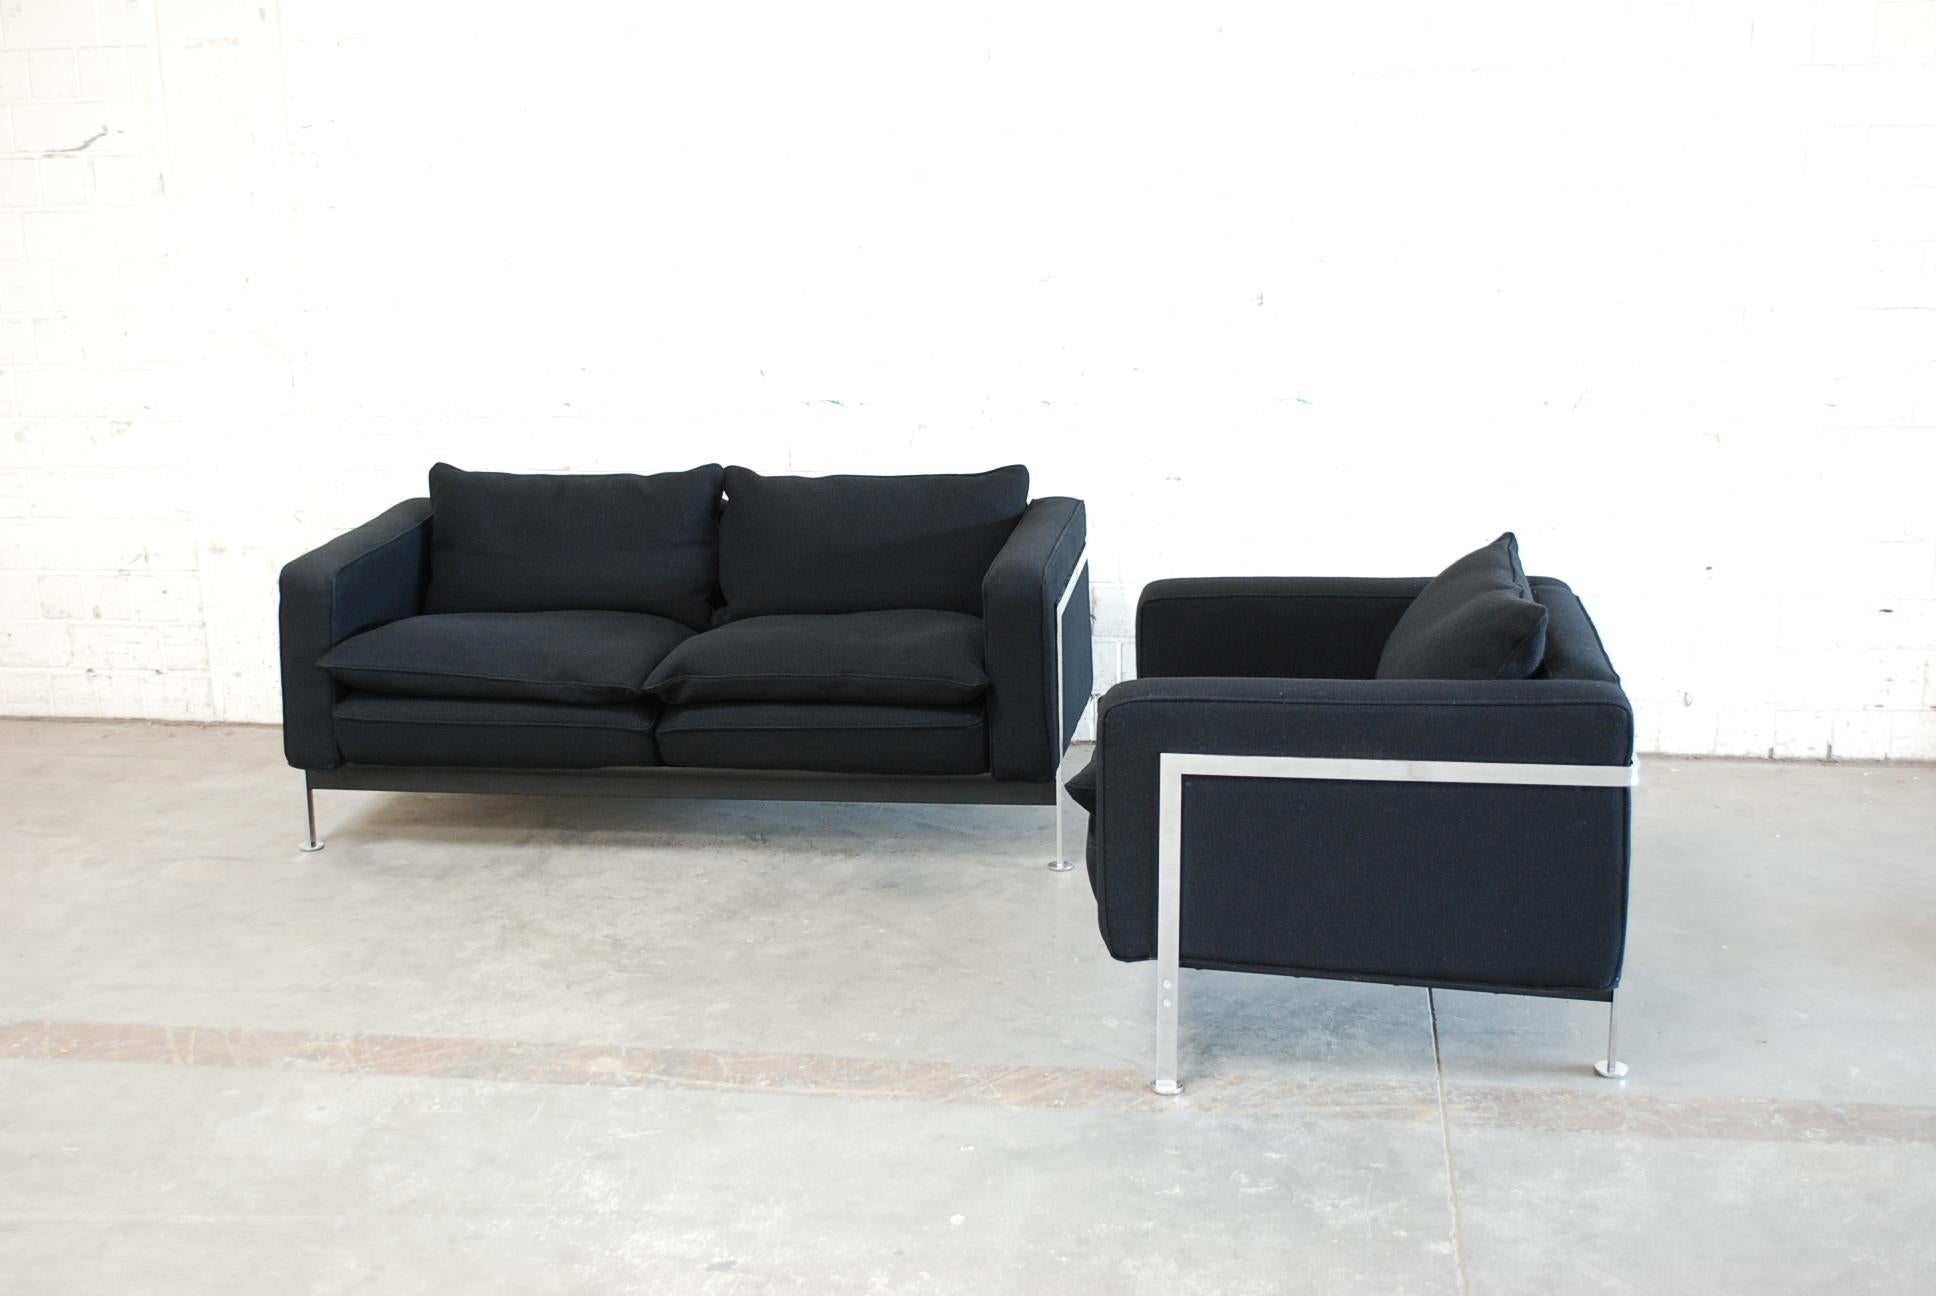 Robert Haussmann RH 302 2-sitziges Sofa und Sessel, hergestellt von De Sede.
Das Sofa und der Sessel wurden vor einigen Jahren mit dem schwarzen Kvadrat Halingdal-Stoff neu gepolstert.
Gestell aus Chromstahl.
Eine weiche, bequeme